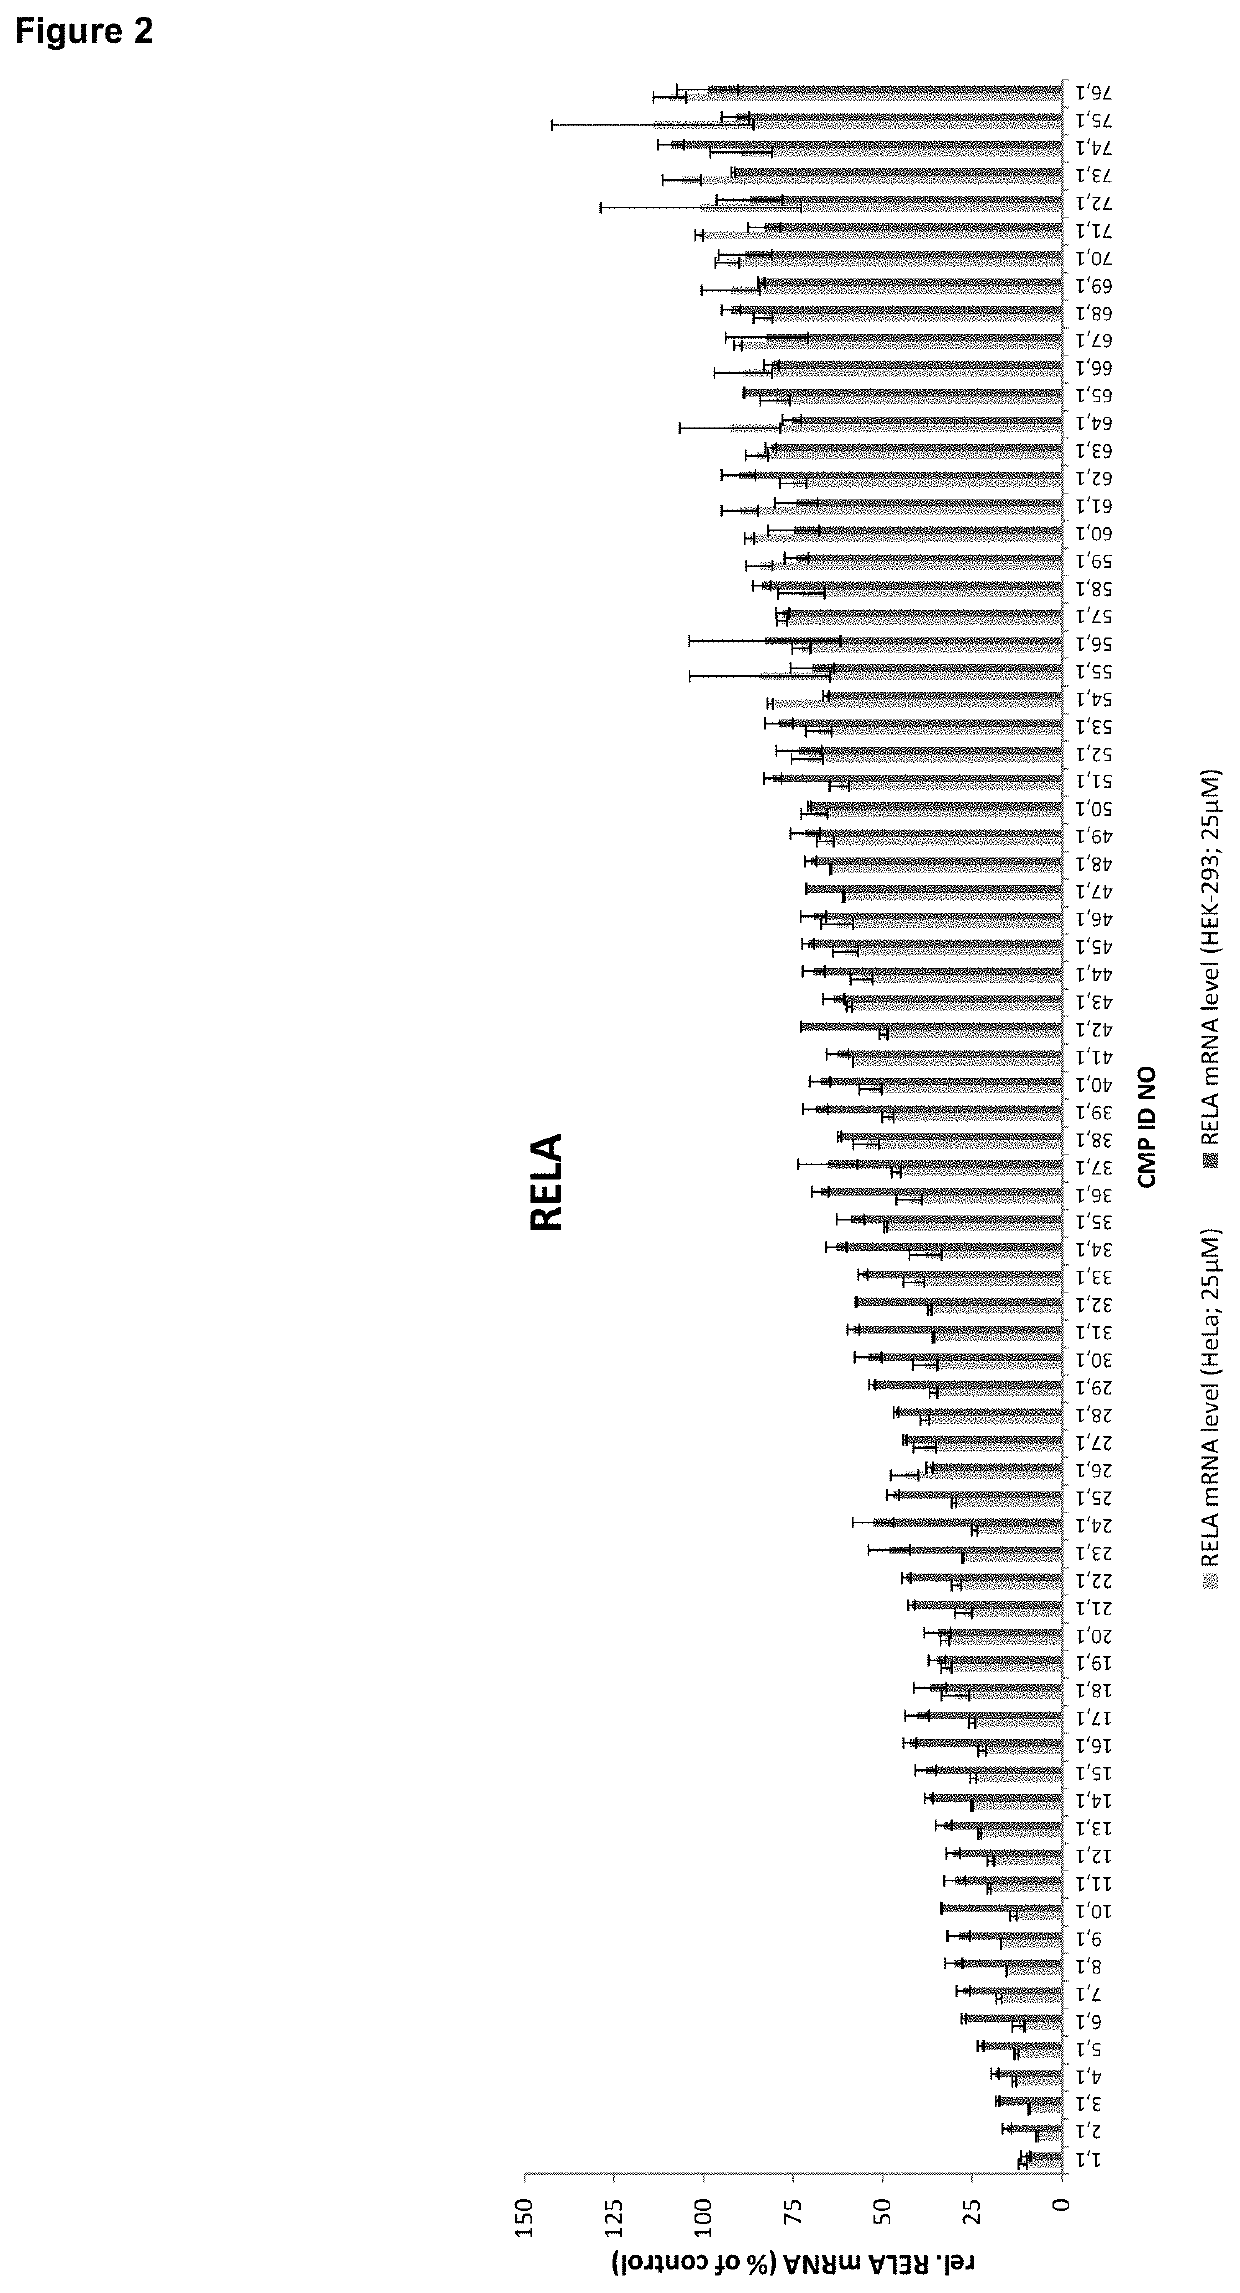 Antisense oligonucleotides for modulating rela expression